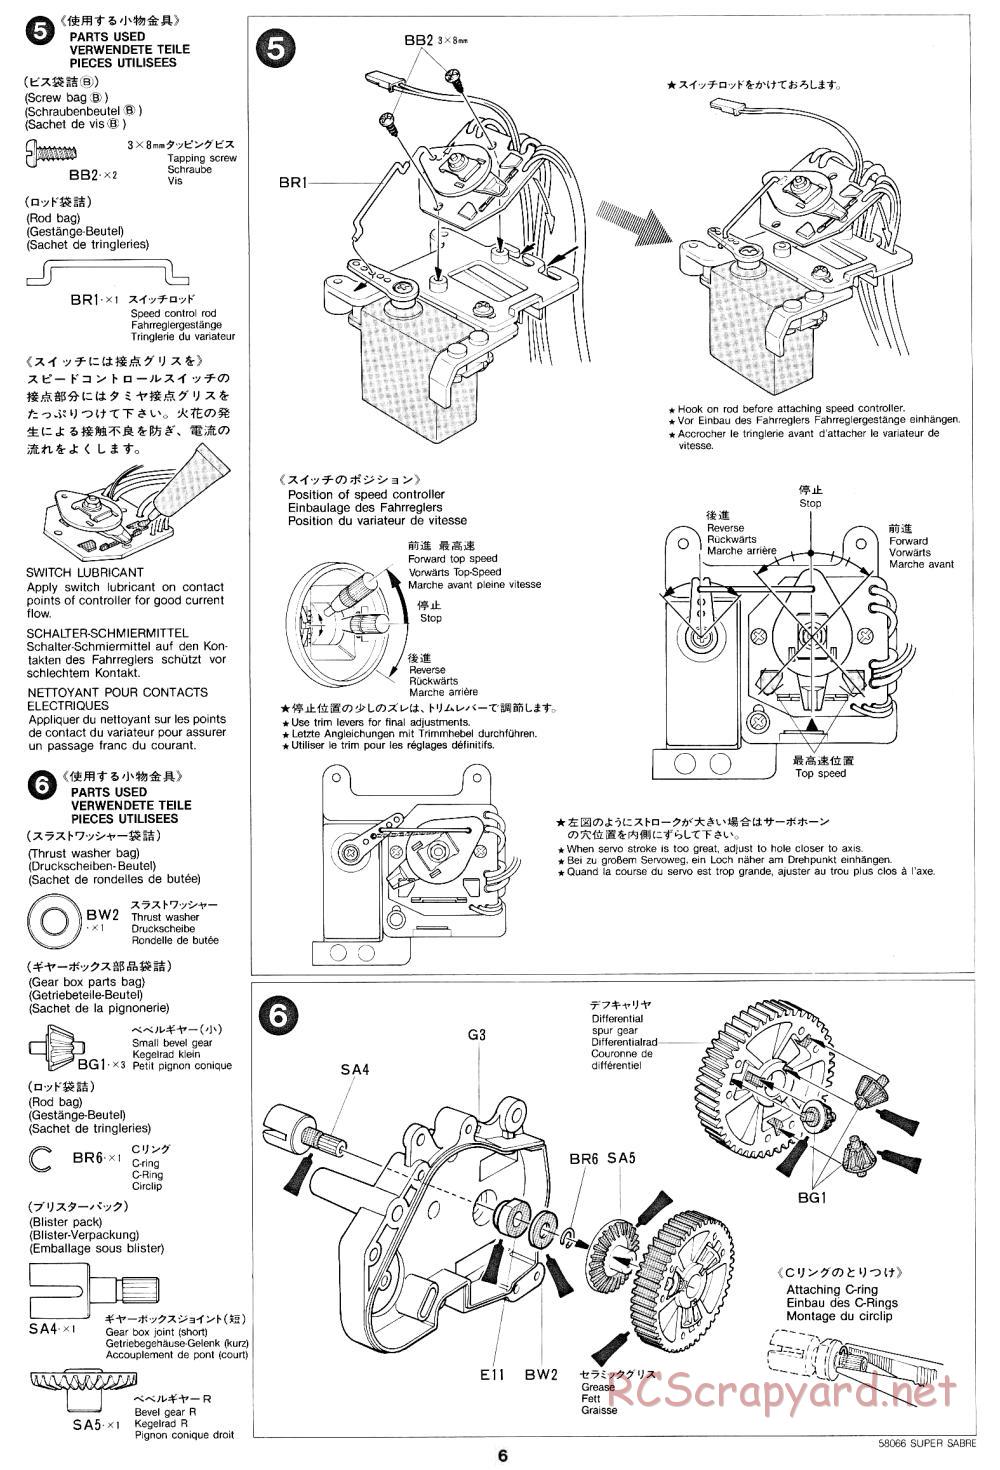 Tamiya - Super Sabre - 58066 - Manual - Page 6